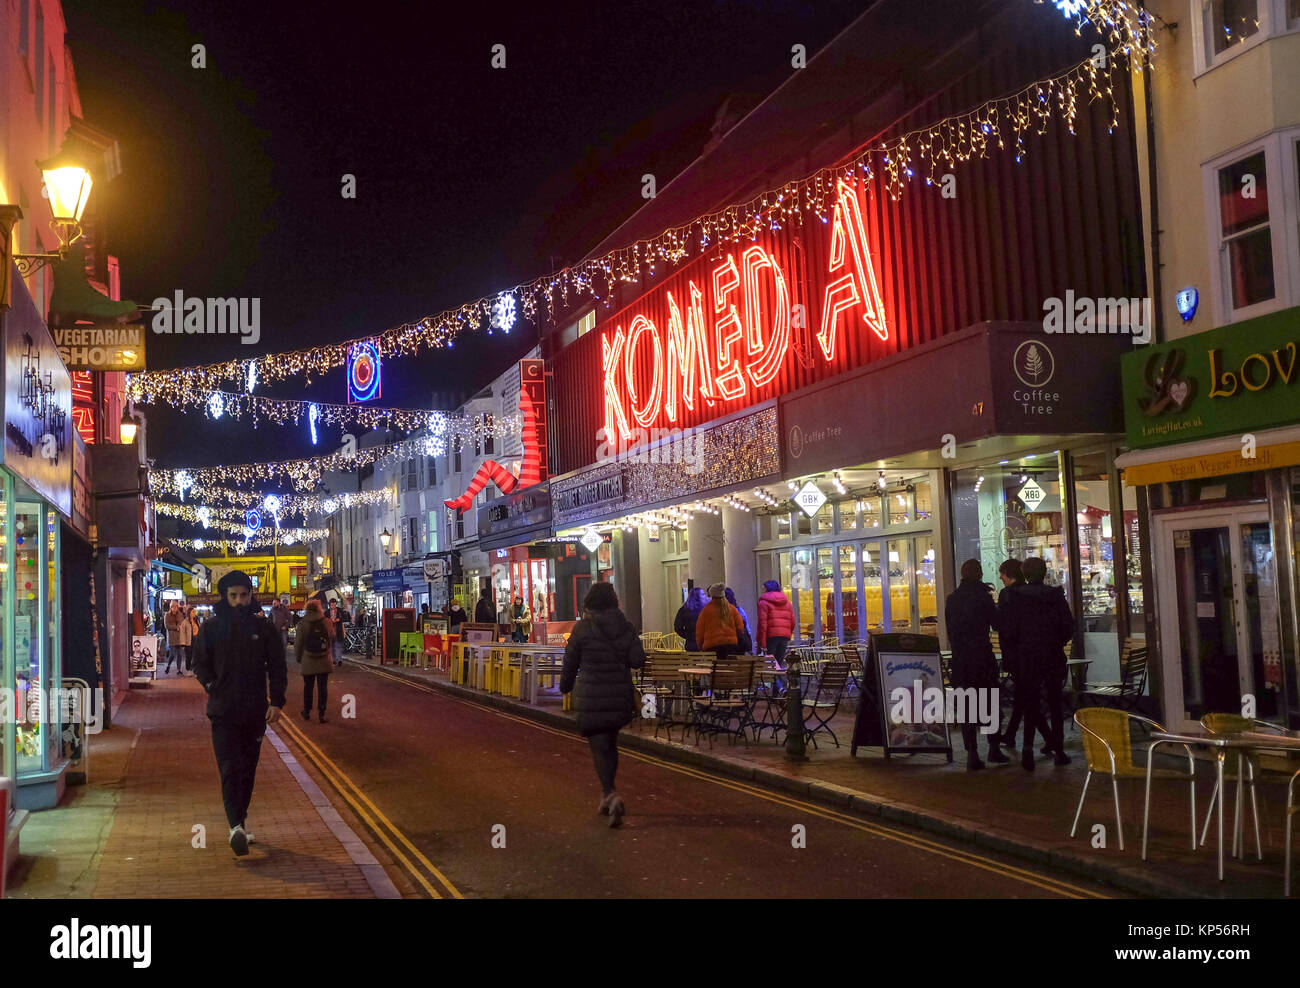 Brighton UK 12. Dezember 2017 - Weihnachten Straßenbeleuchtung in North Laine in Brighton mit der komedia Theater und Kino Stockfoto